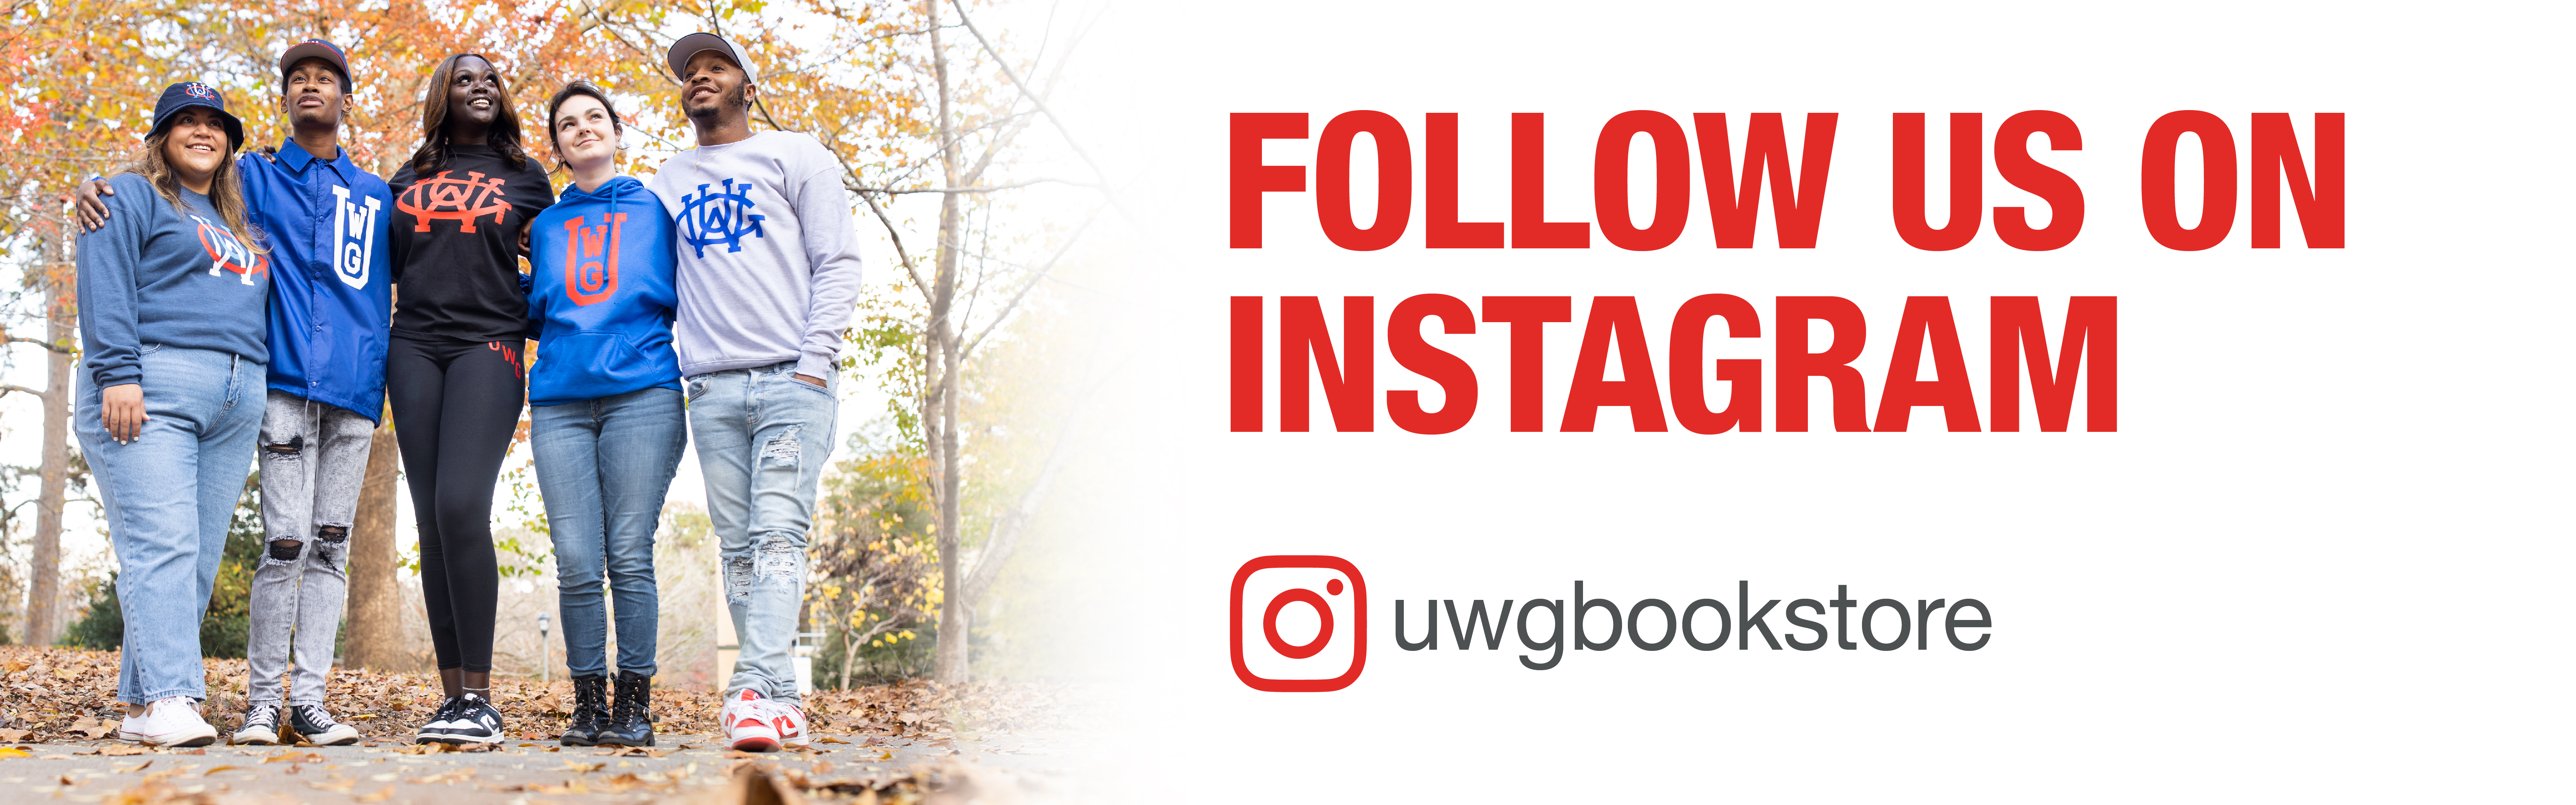 Follow us on Instagram, @UWGBookstore